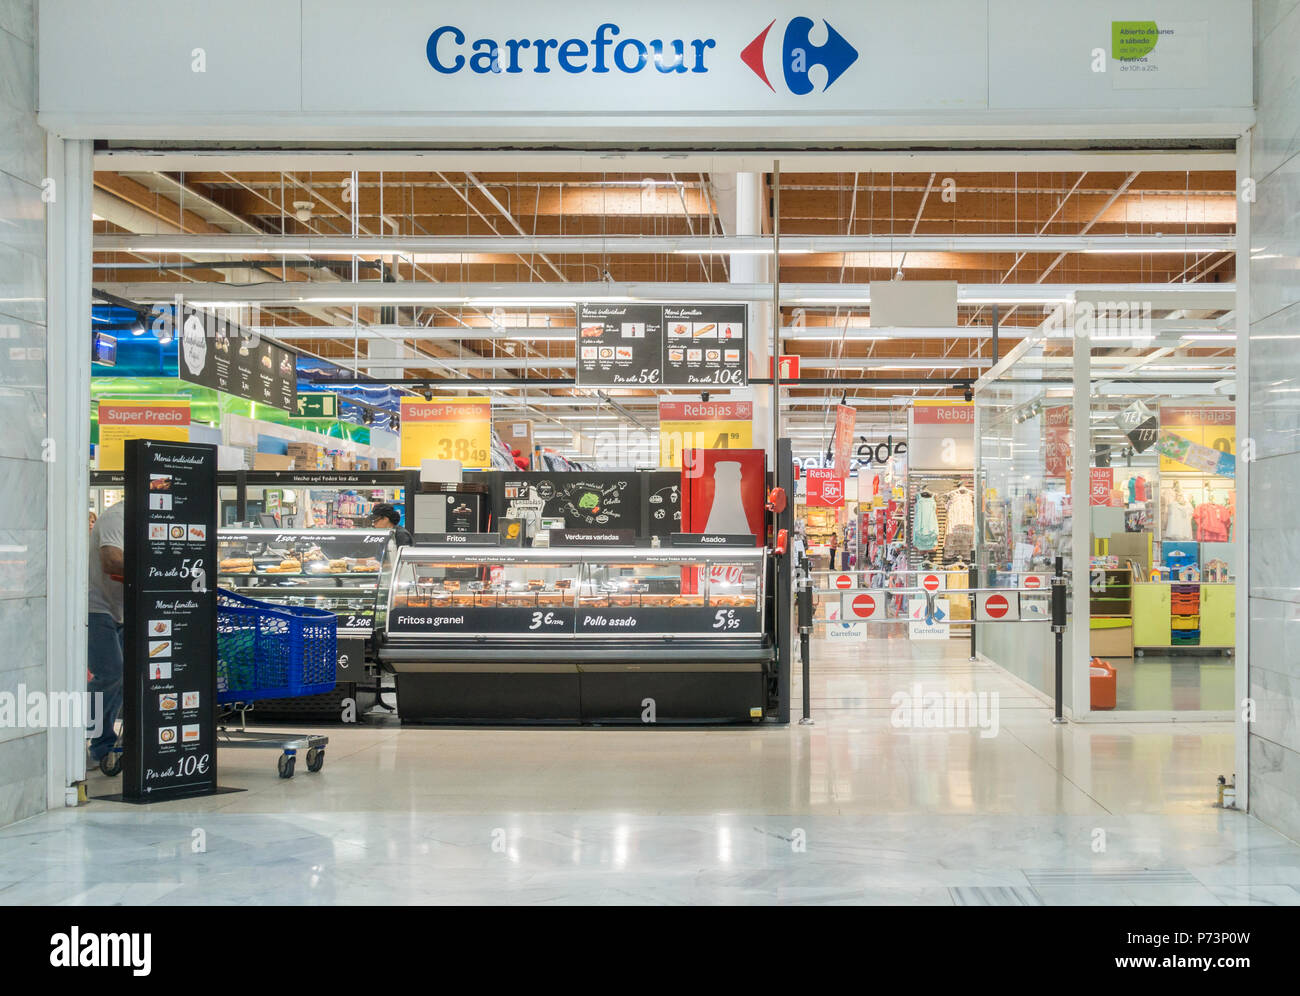 Entrada supermercado Carrefour en España Fotografía de stock - Alamy